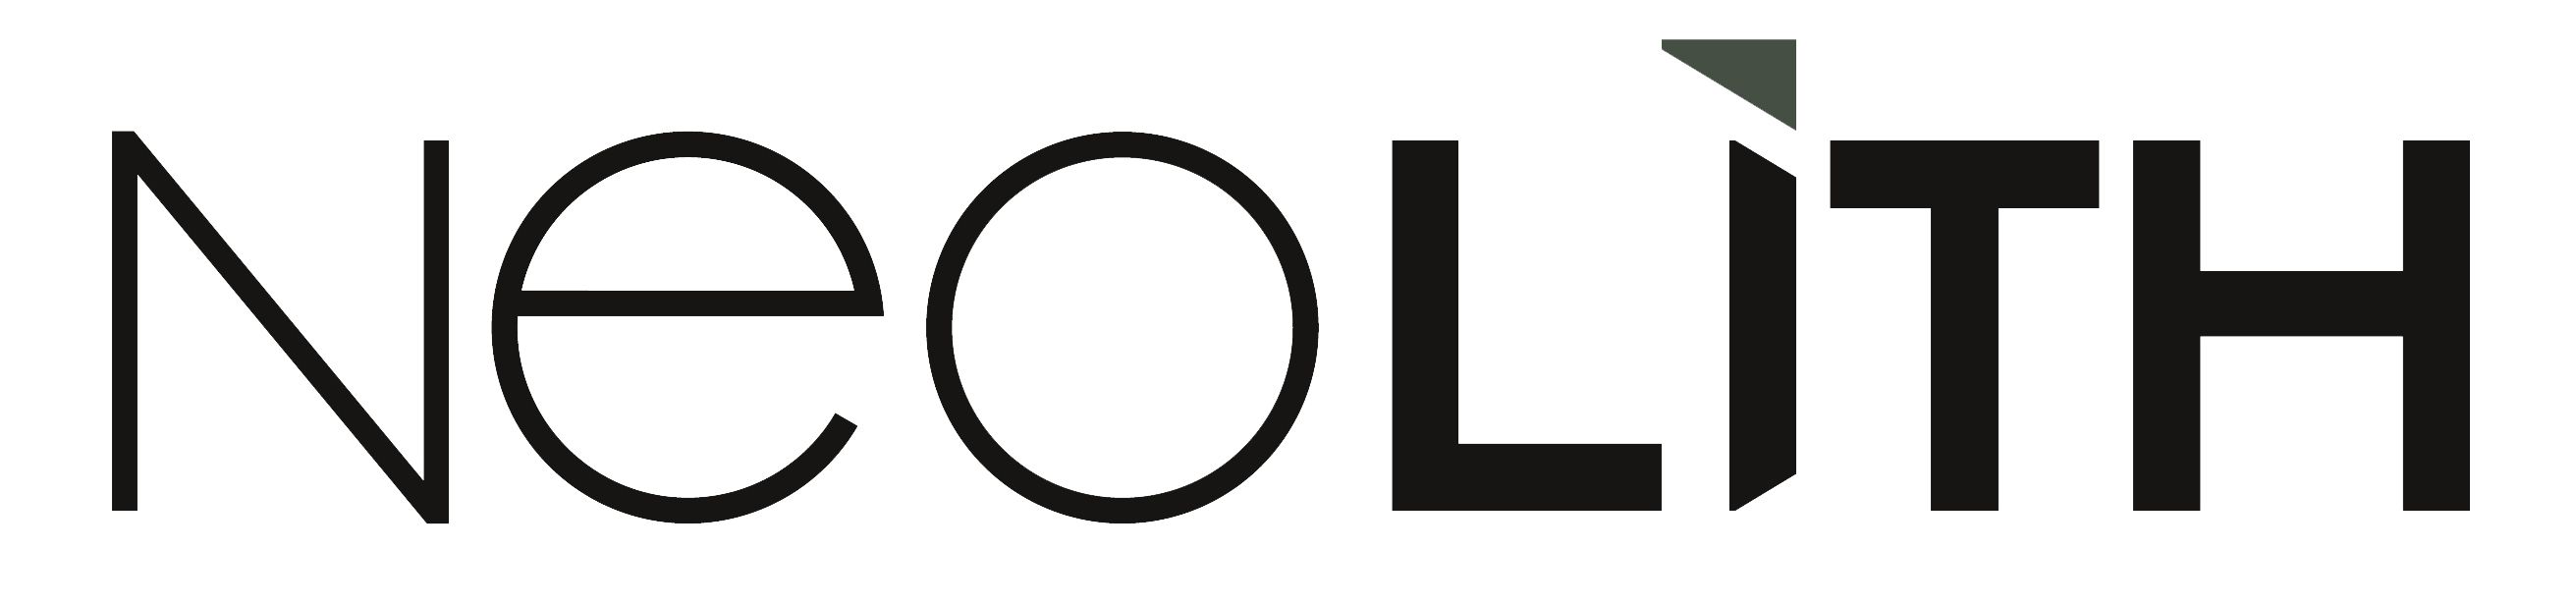 Neolith  sponsor logo